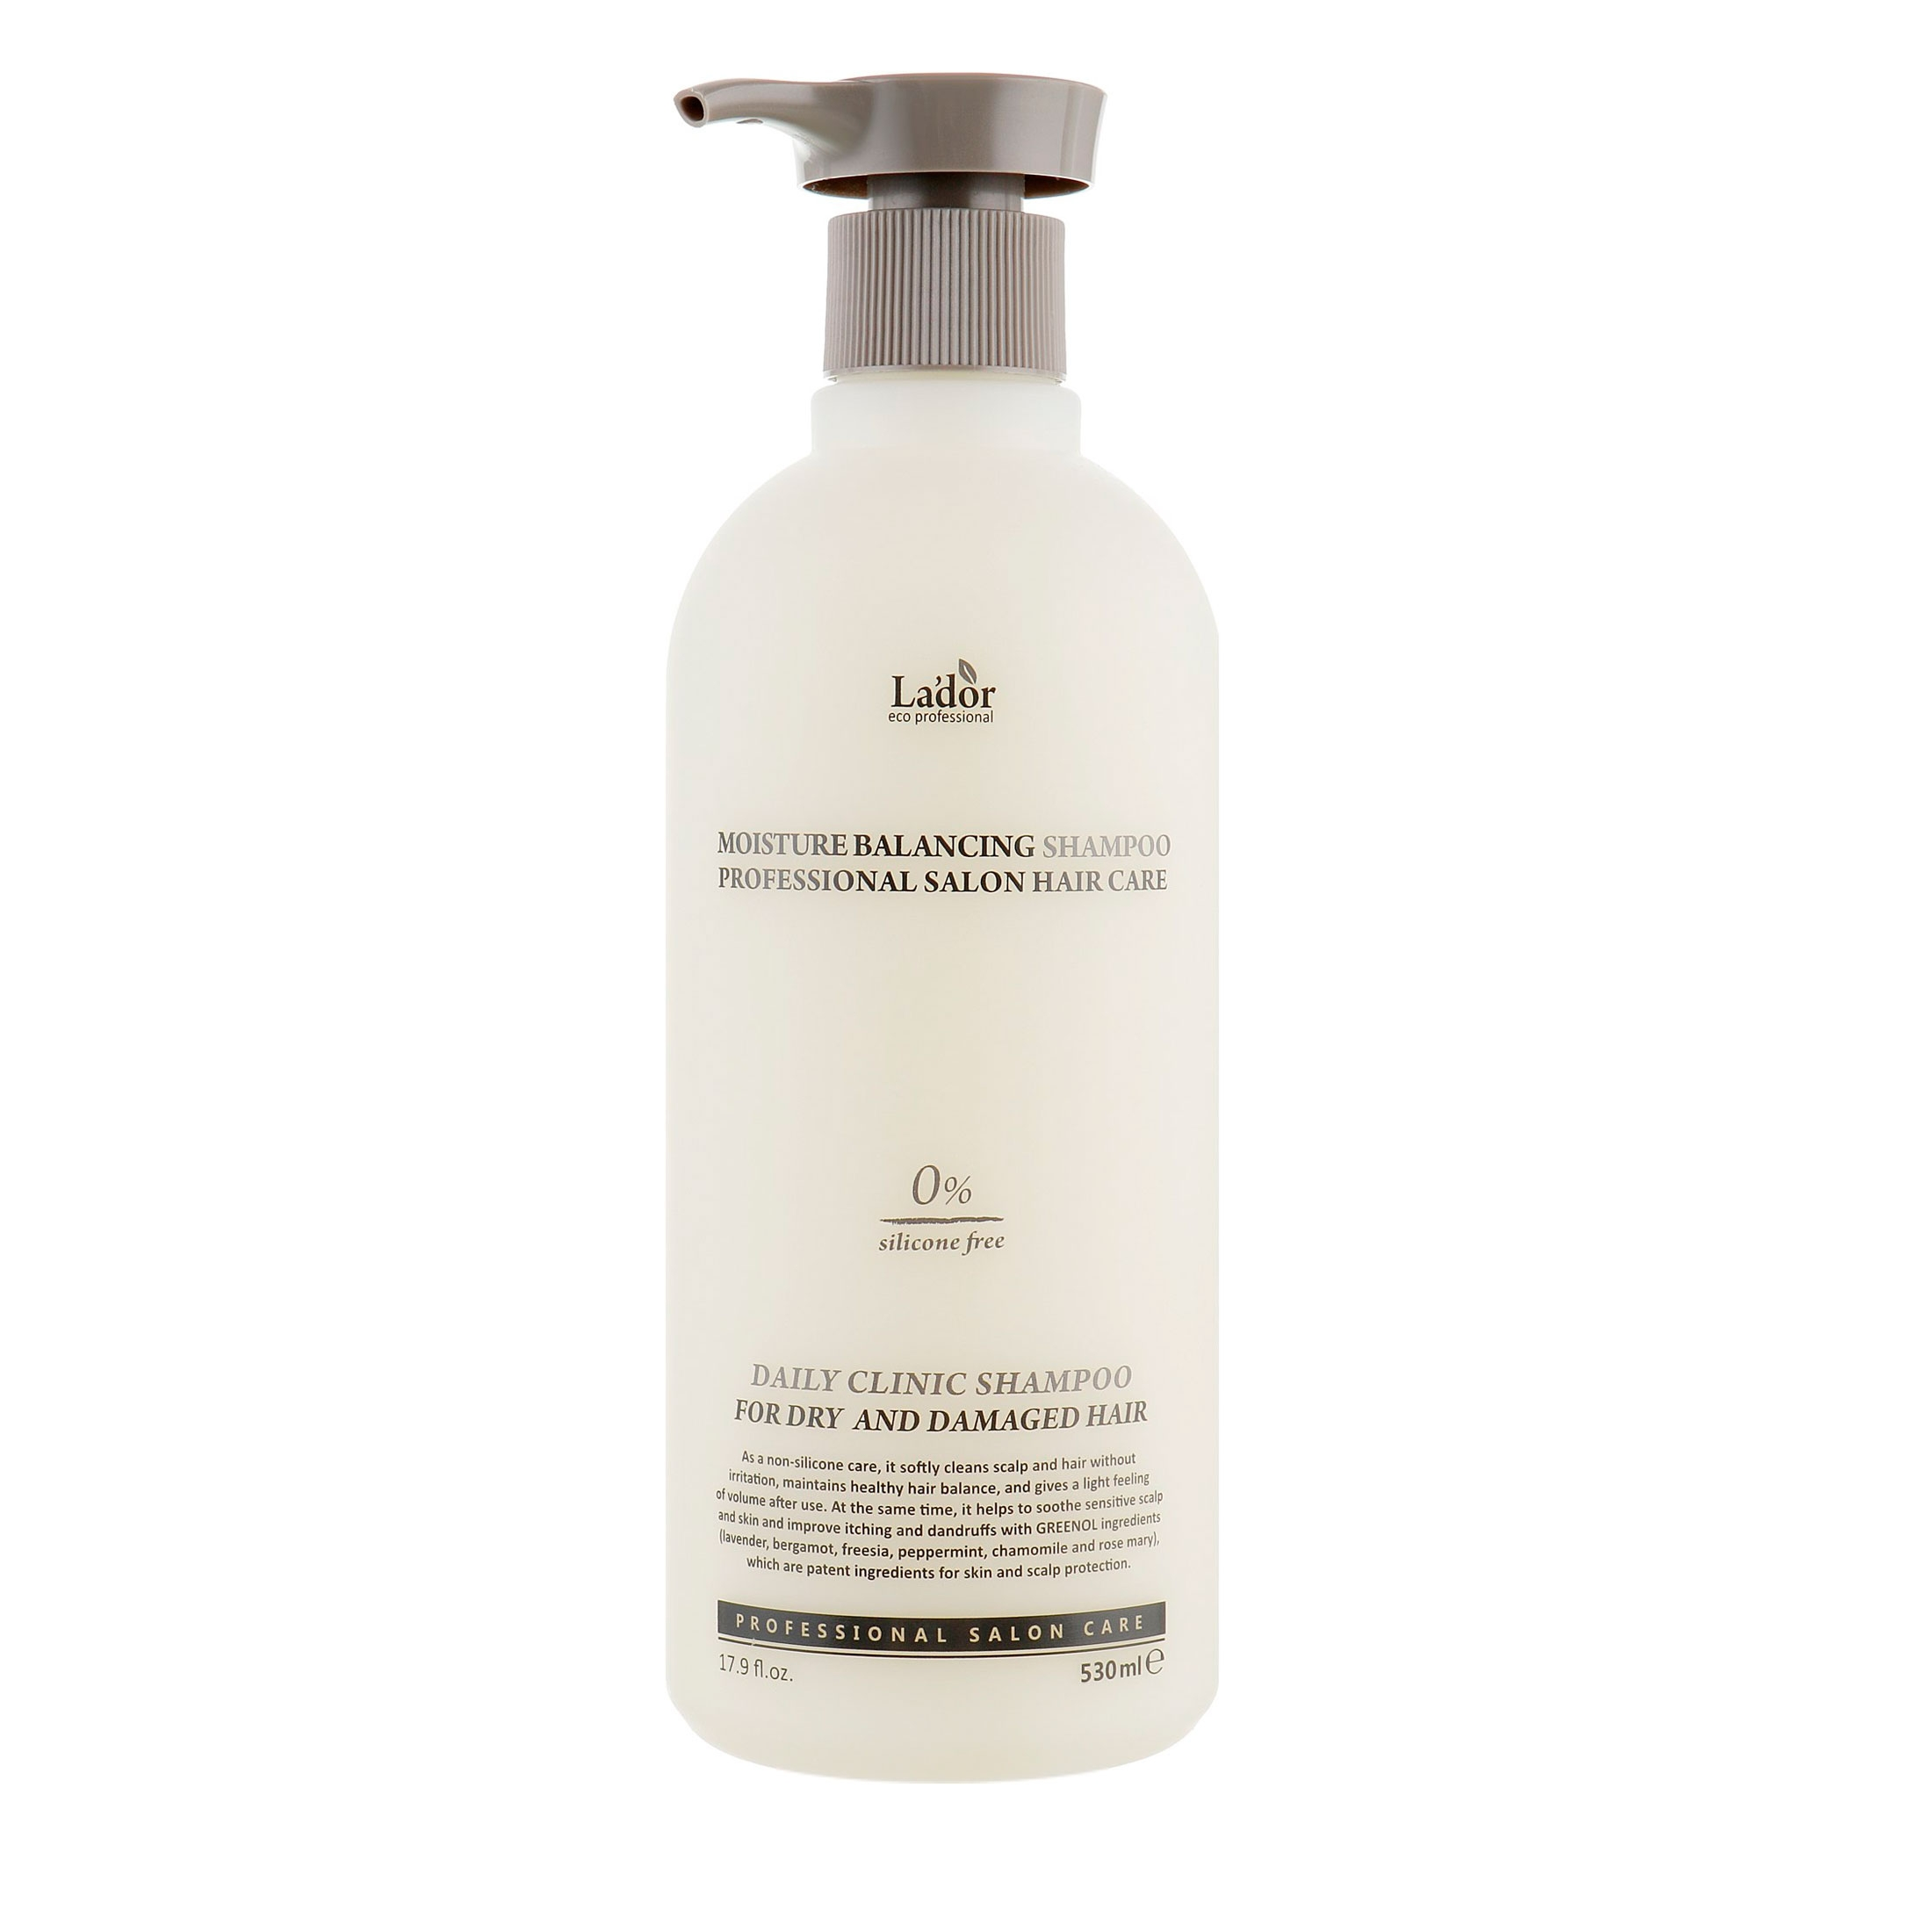 Шампунь La'dor Безсиликоновый увлажняющий Moisture Balancing Shampoo, 530 мл (810889) - фото 1